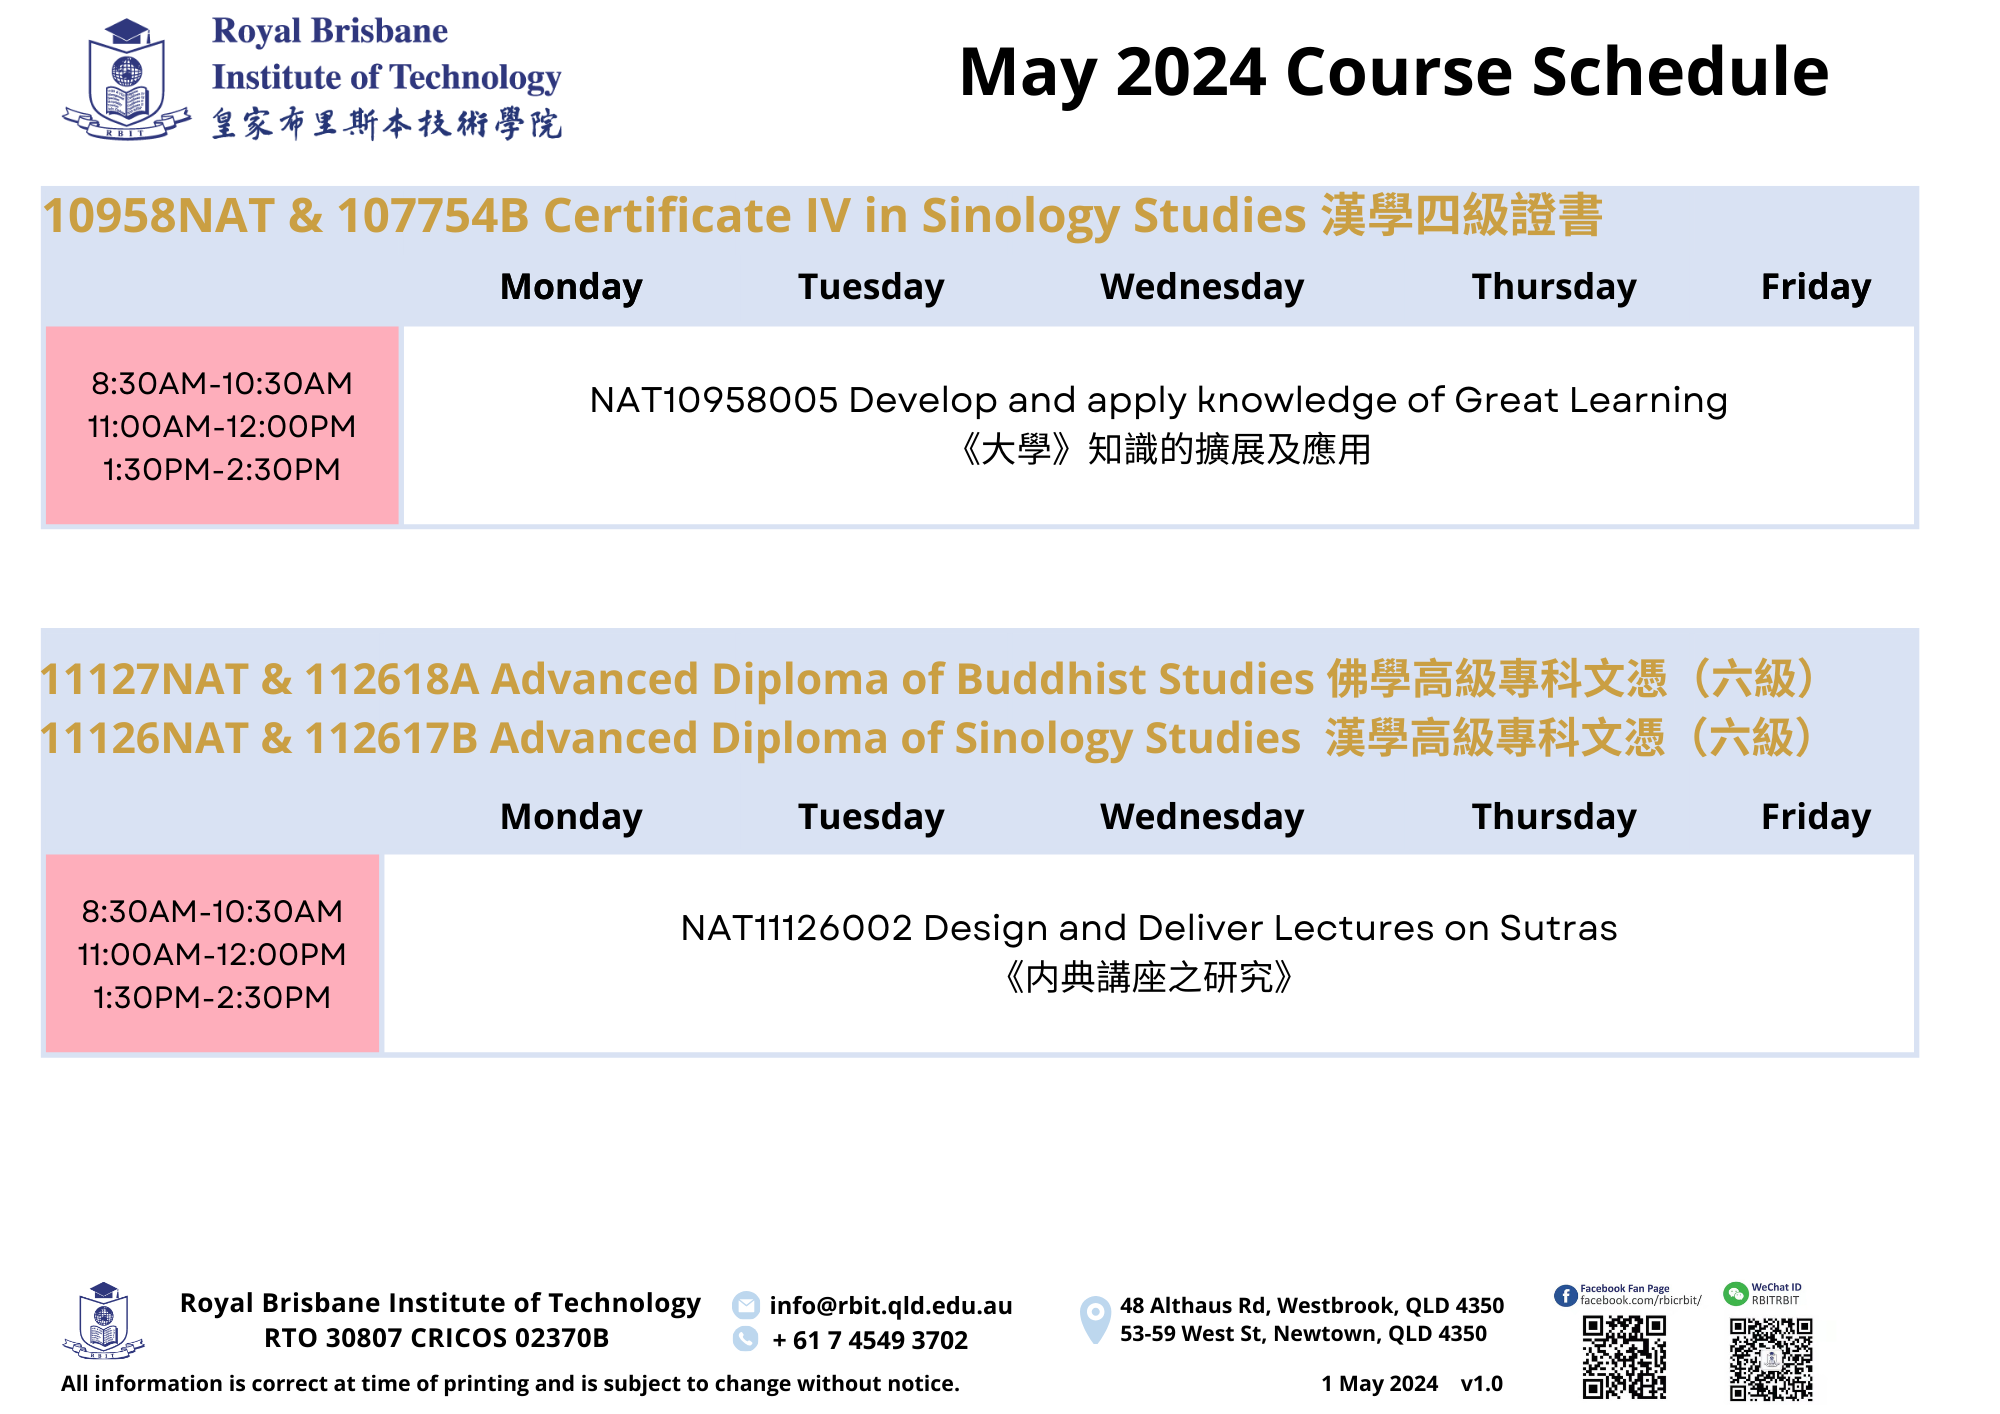 AL0_202405 Course Schedule_v1.0